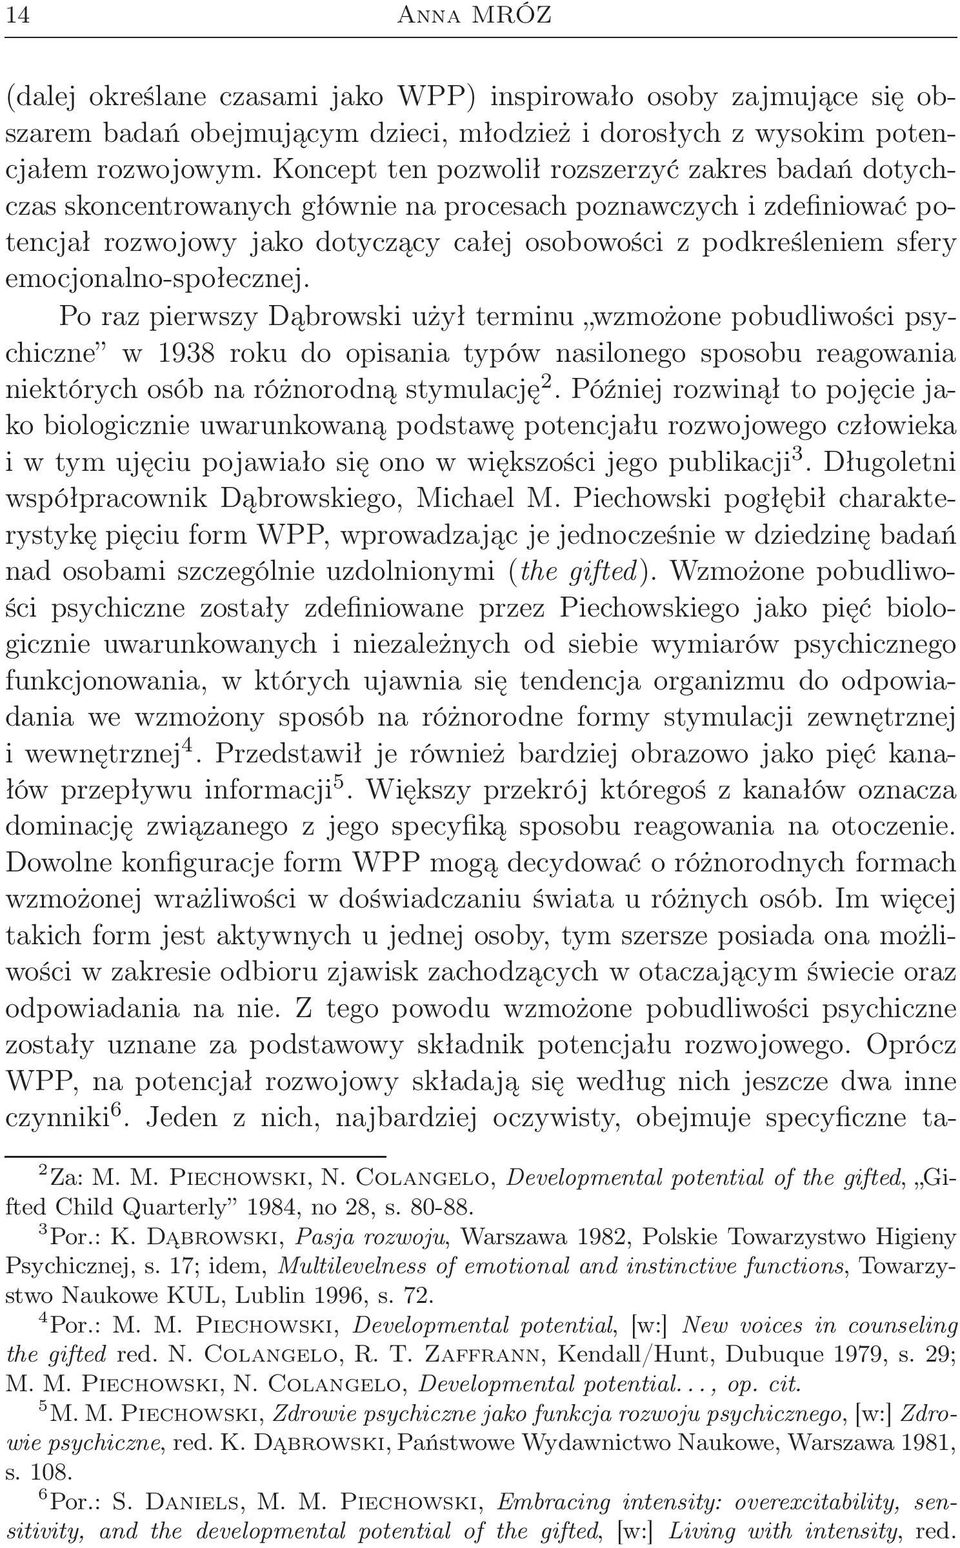 emocjonalno-społecznej. Po raz pierwszy Dąbrowski użył terminu wzmożone pobudliwości psychiczne w 1938 roku do opisania typów nasilonego sposobu reagowania niektórych osób na różnorodną stymulację 2.